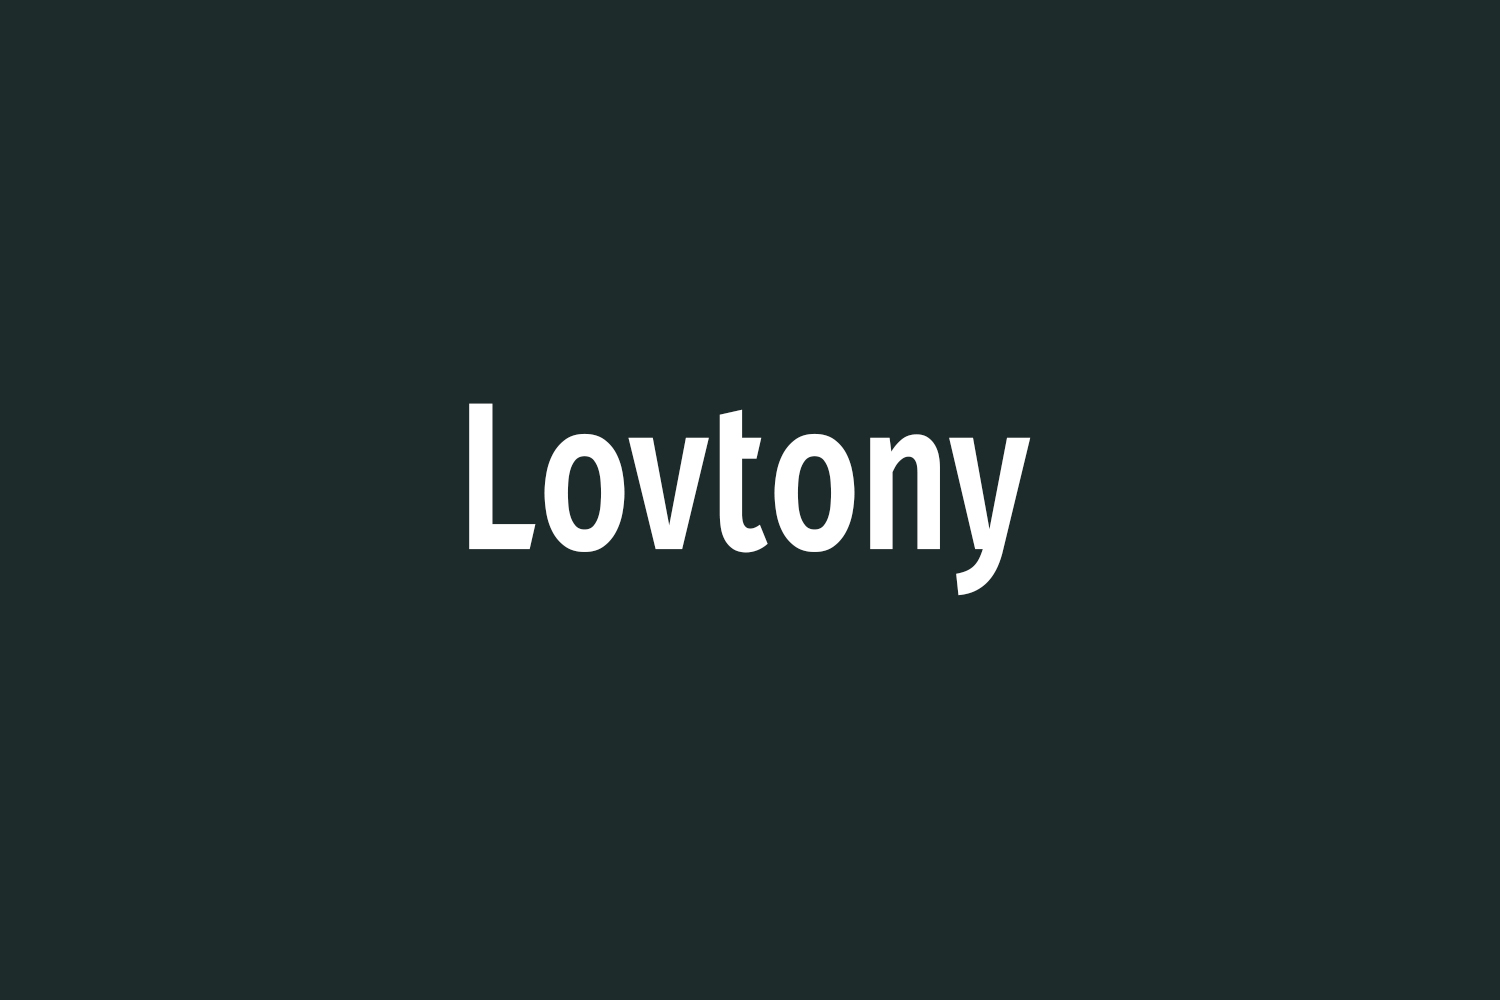 Lovtony Free Font